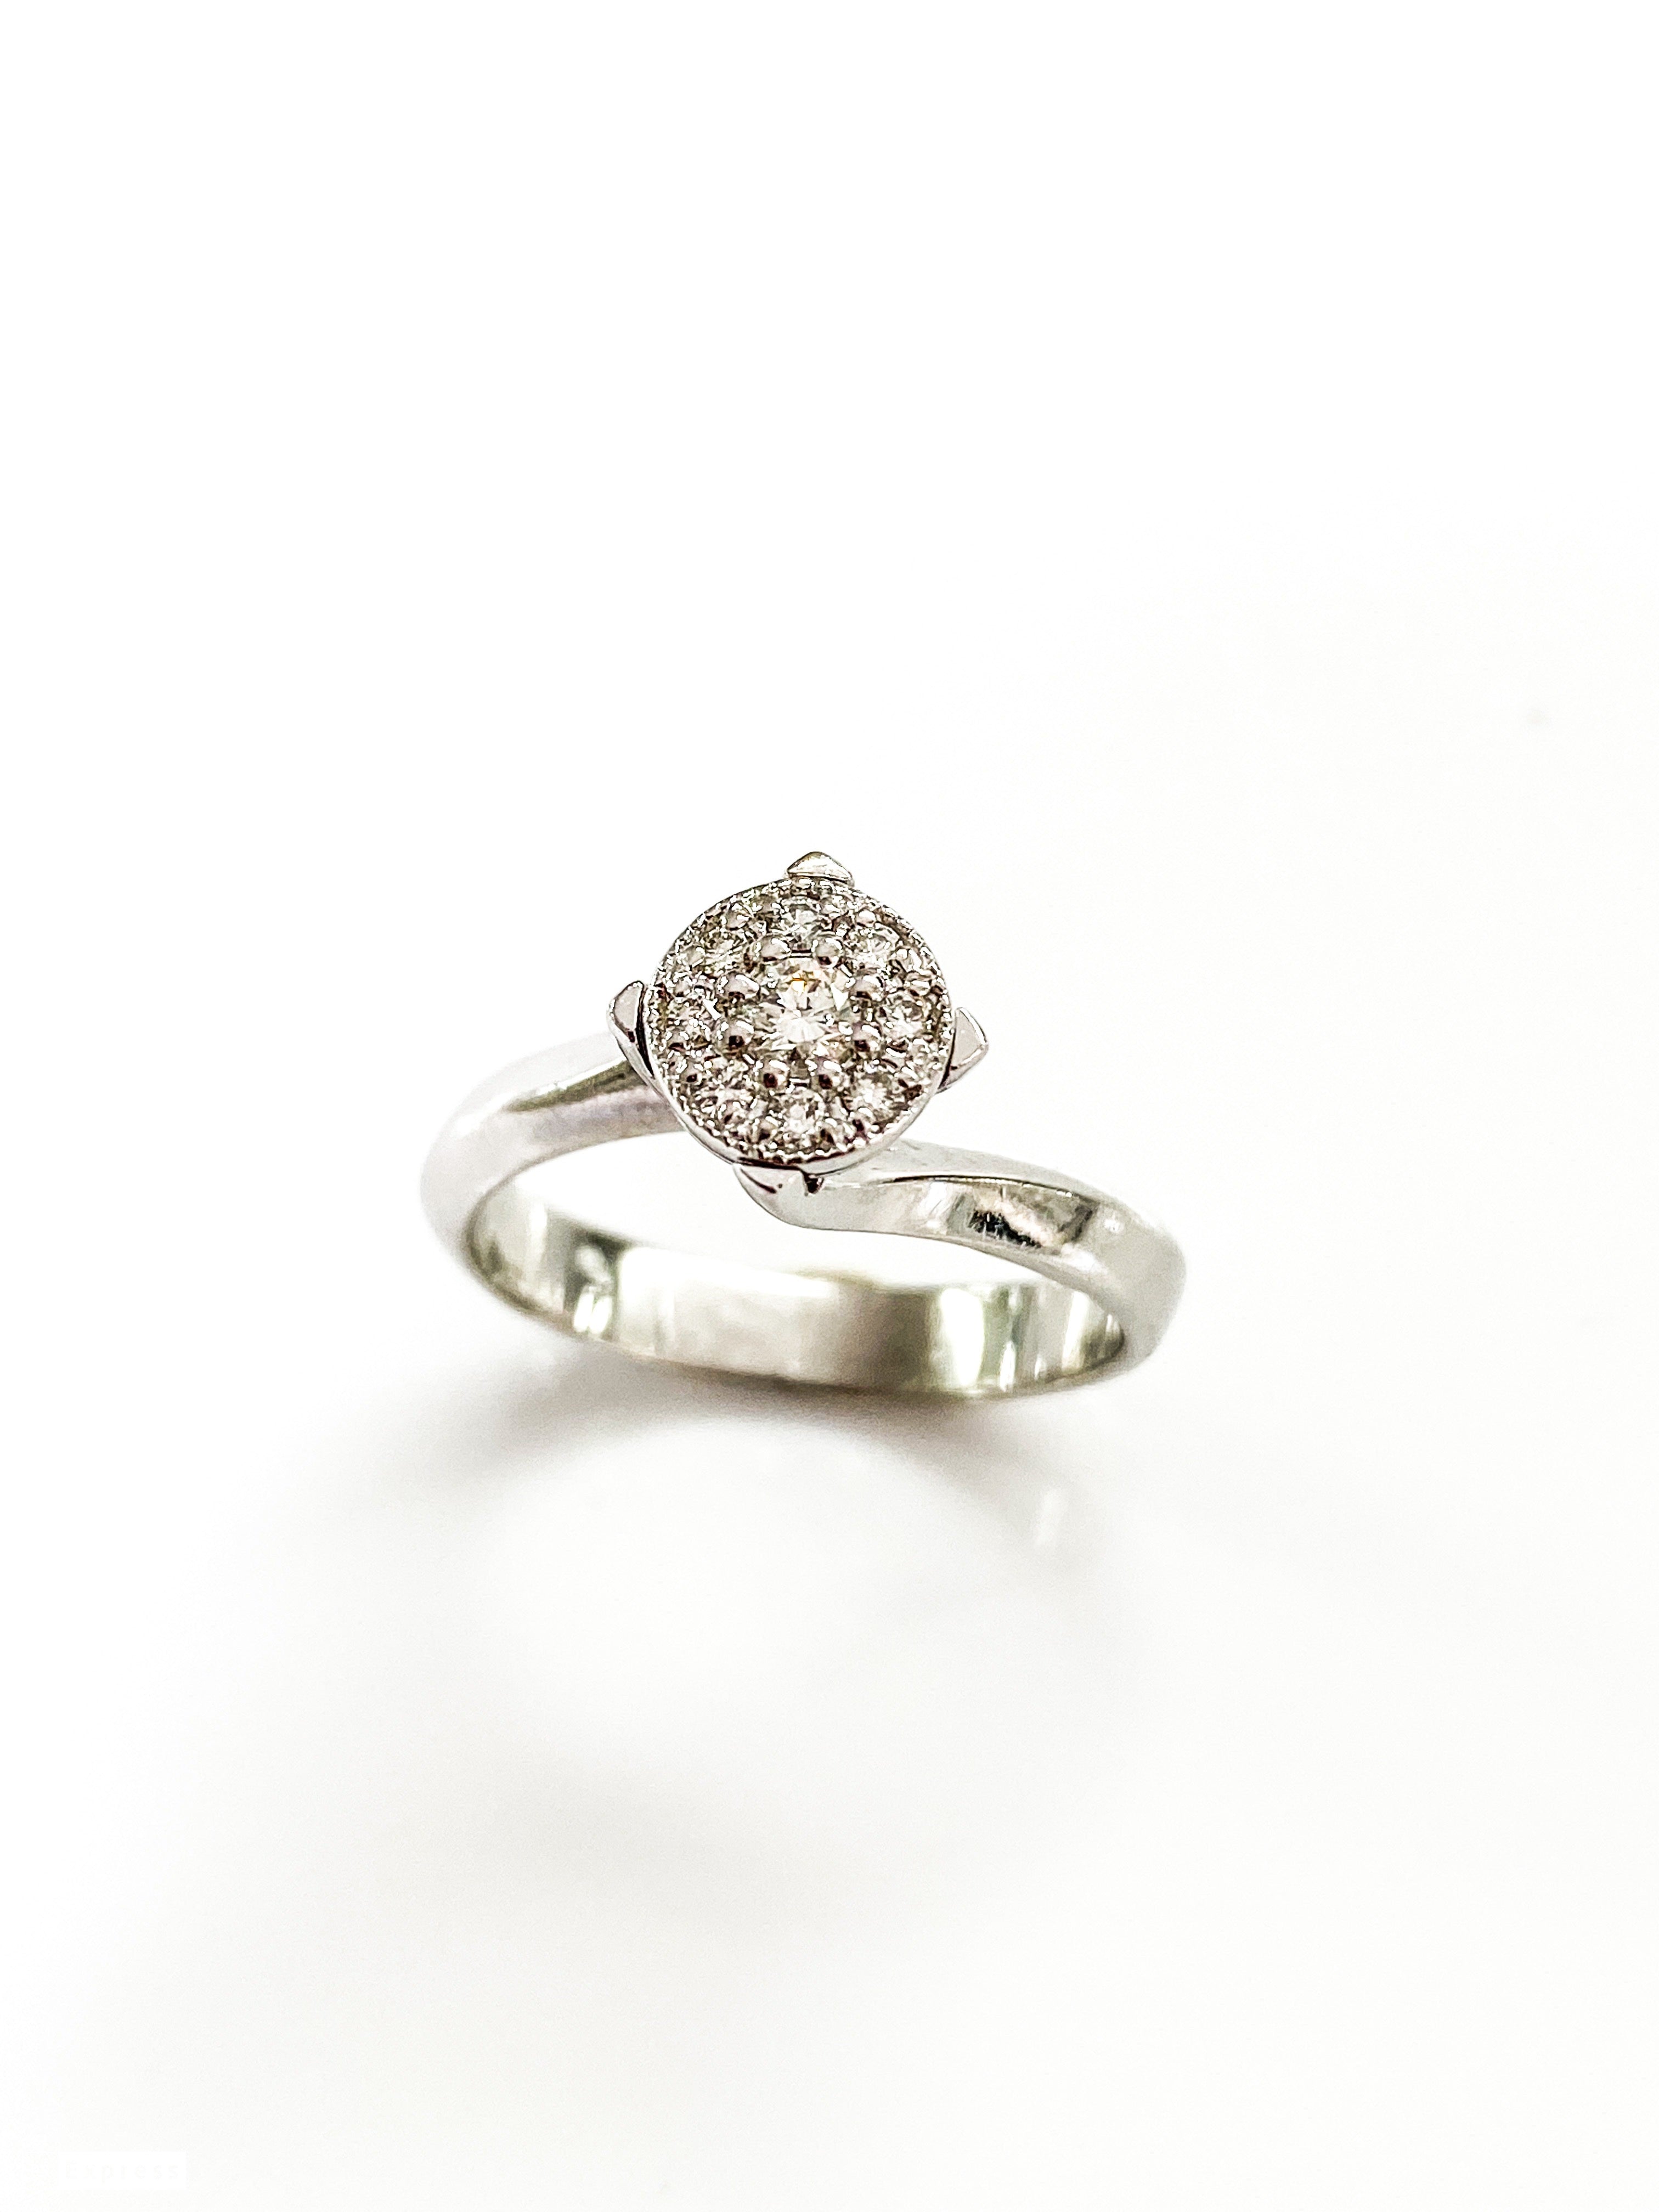 טבעת זהב 14 קארט  לבן עם עיגול יהלומים